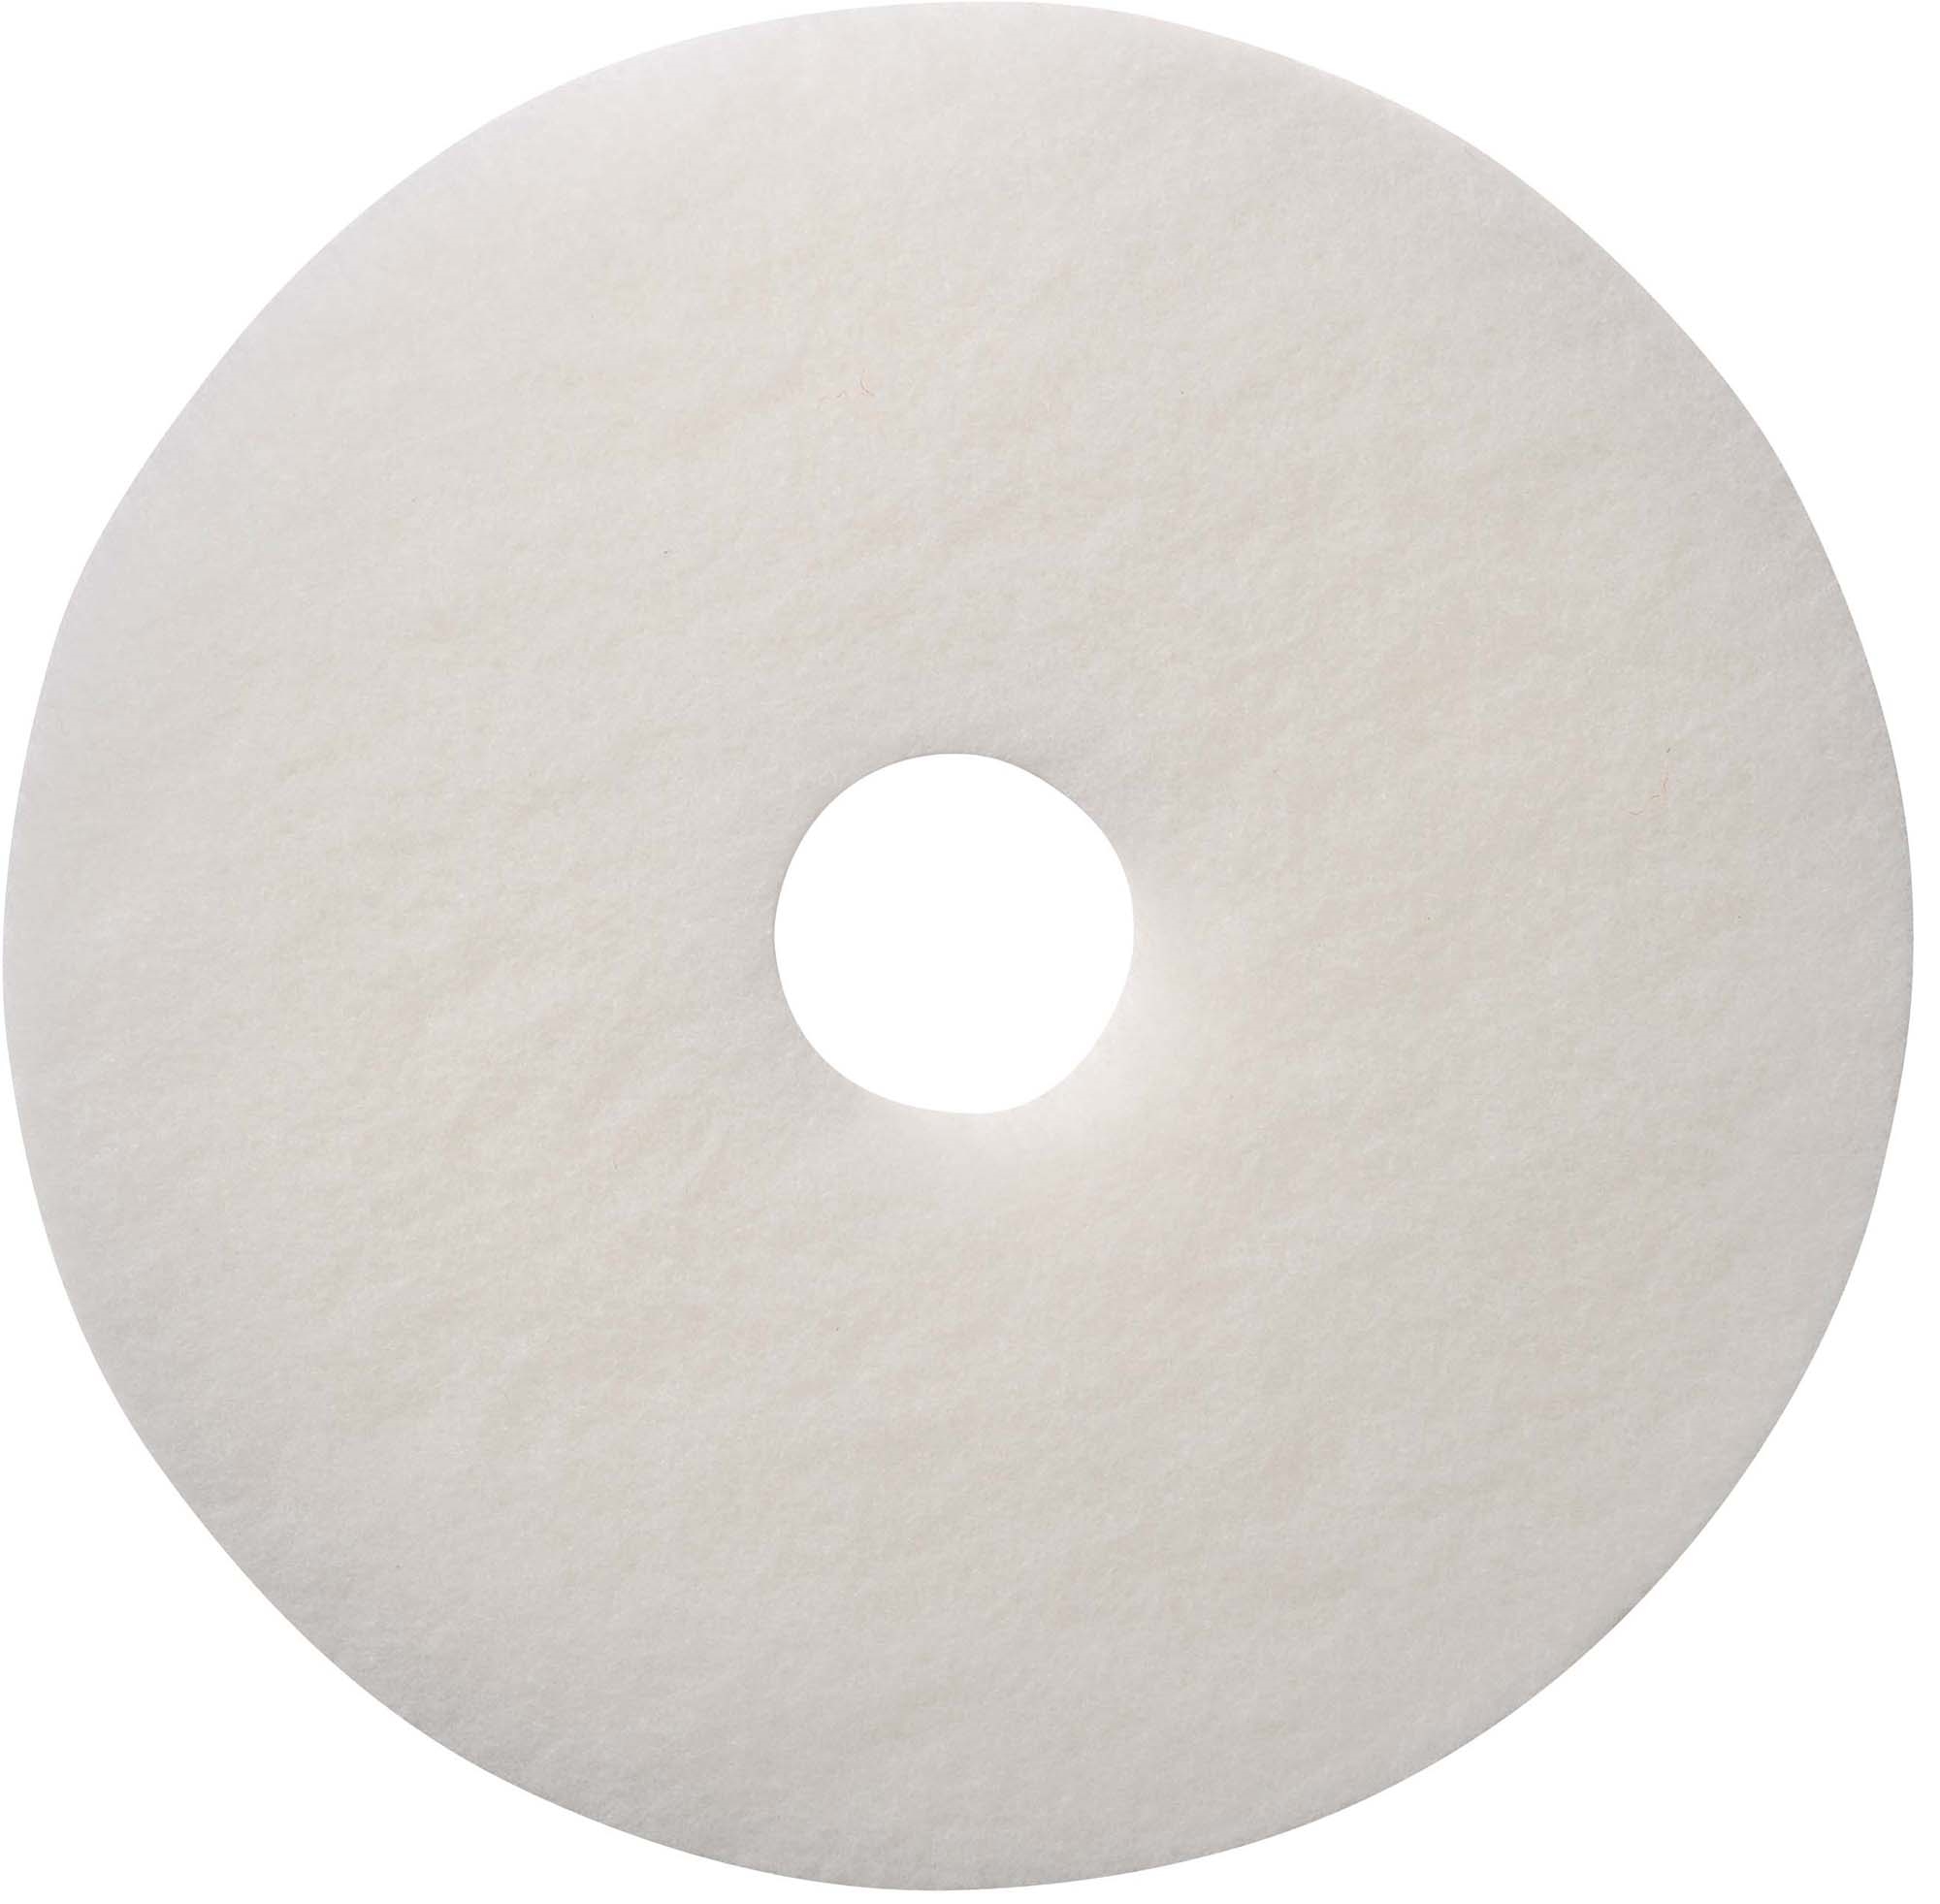 Disque blanc polissage sol 505 mm colis de 5